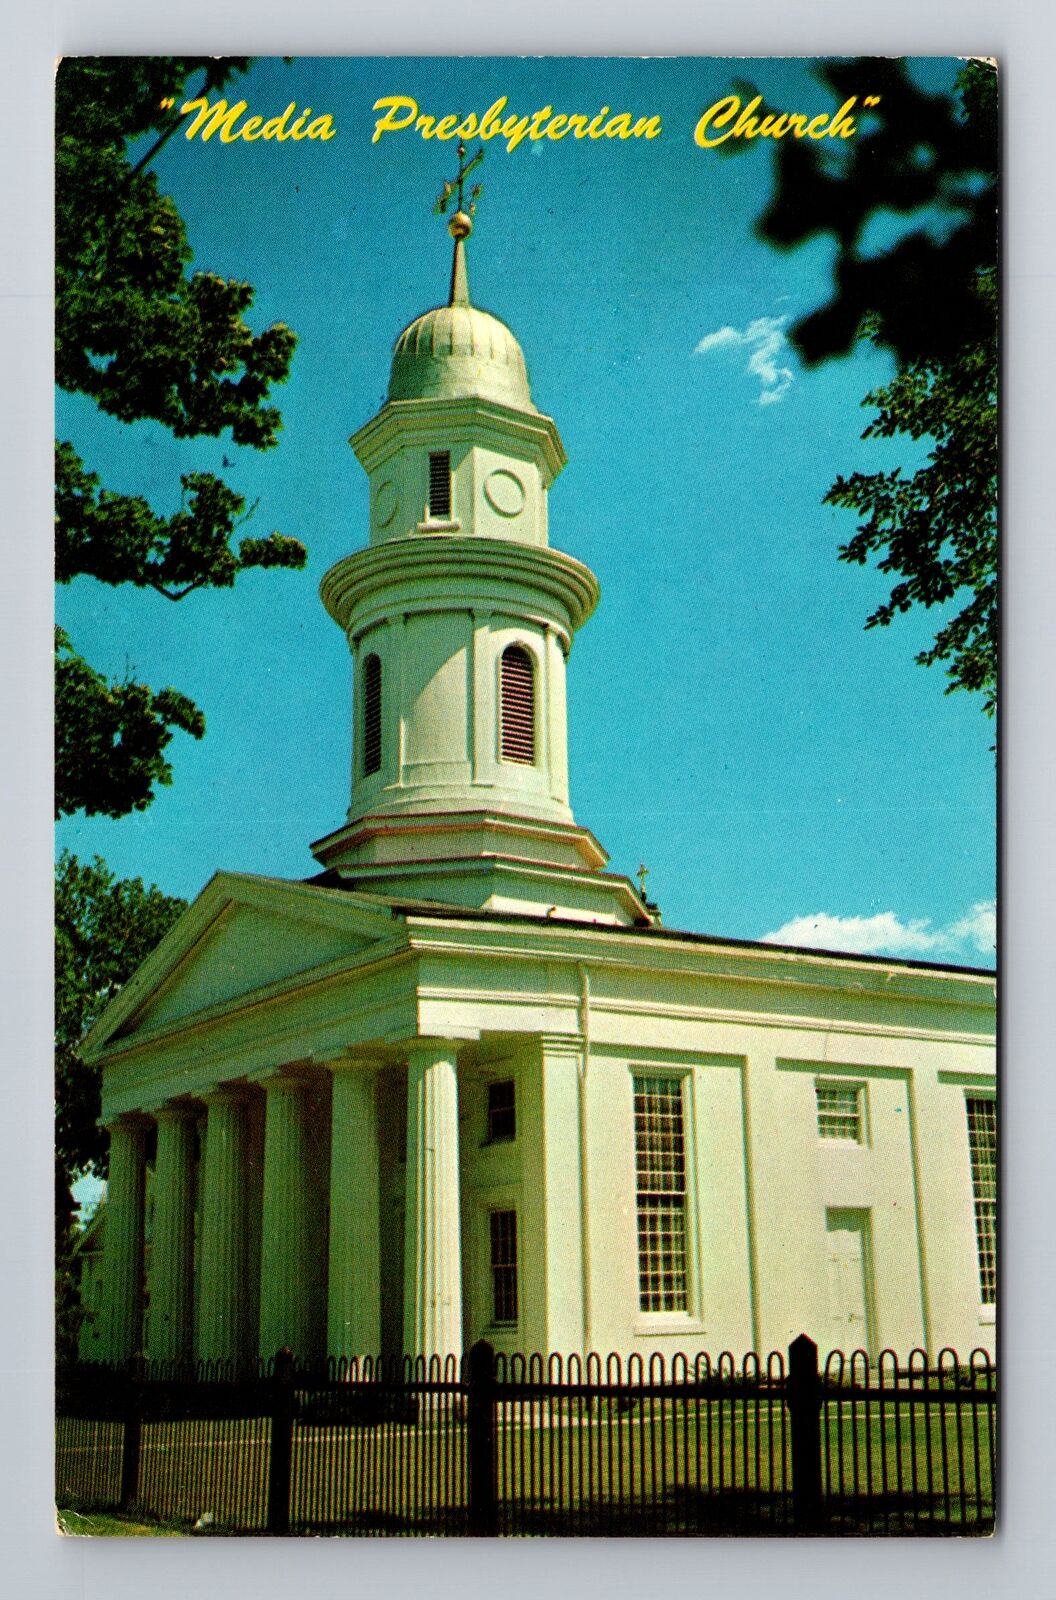 Media PA-Pennsylvania, Media Presbyterian Church, Religion, Vintage Postcard